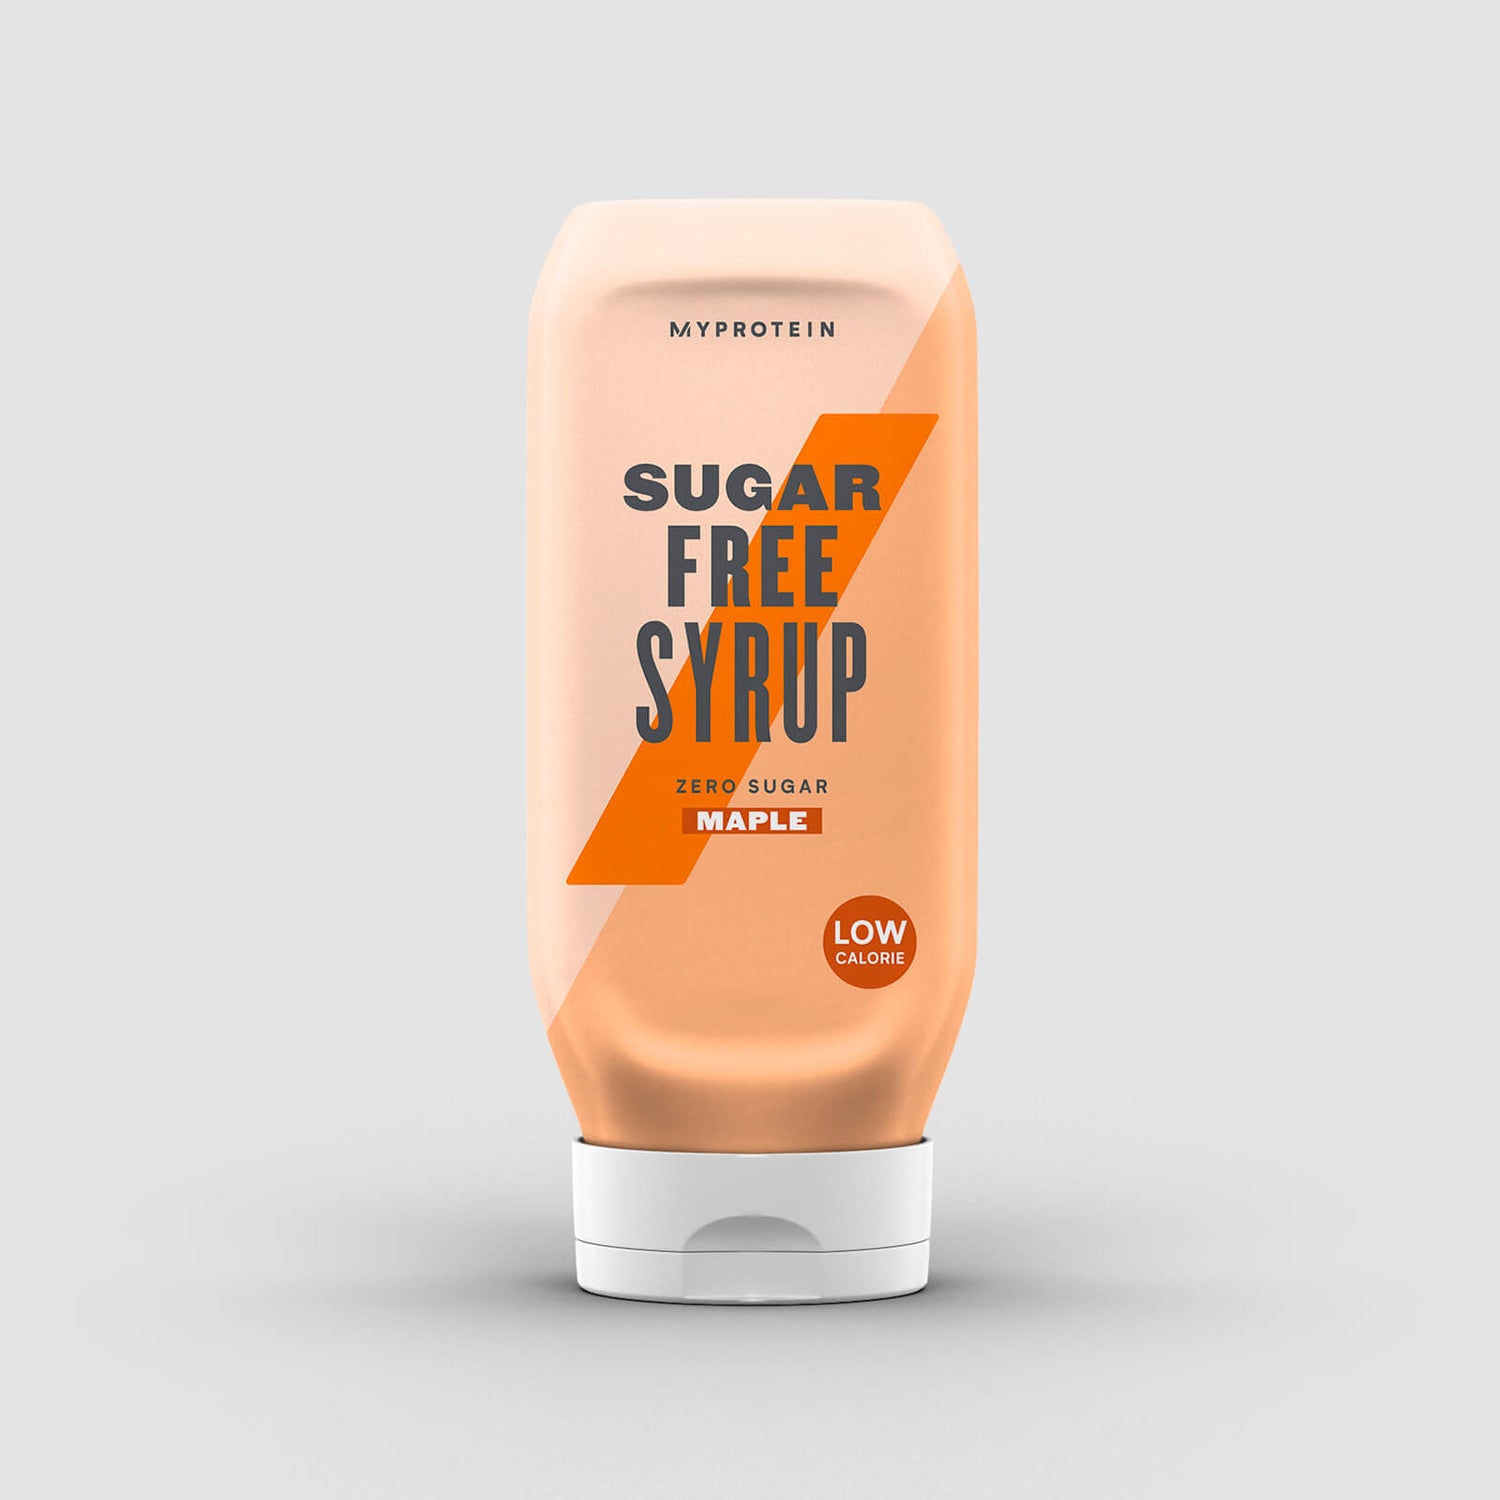 Σιρόπι χωρίς ζάχαρη - Σφεντάμi/ Μaple